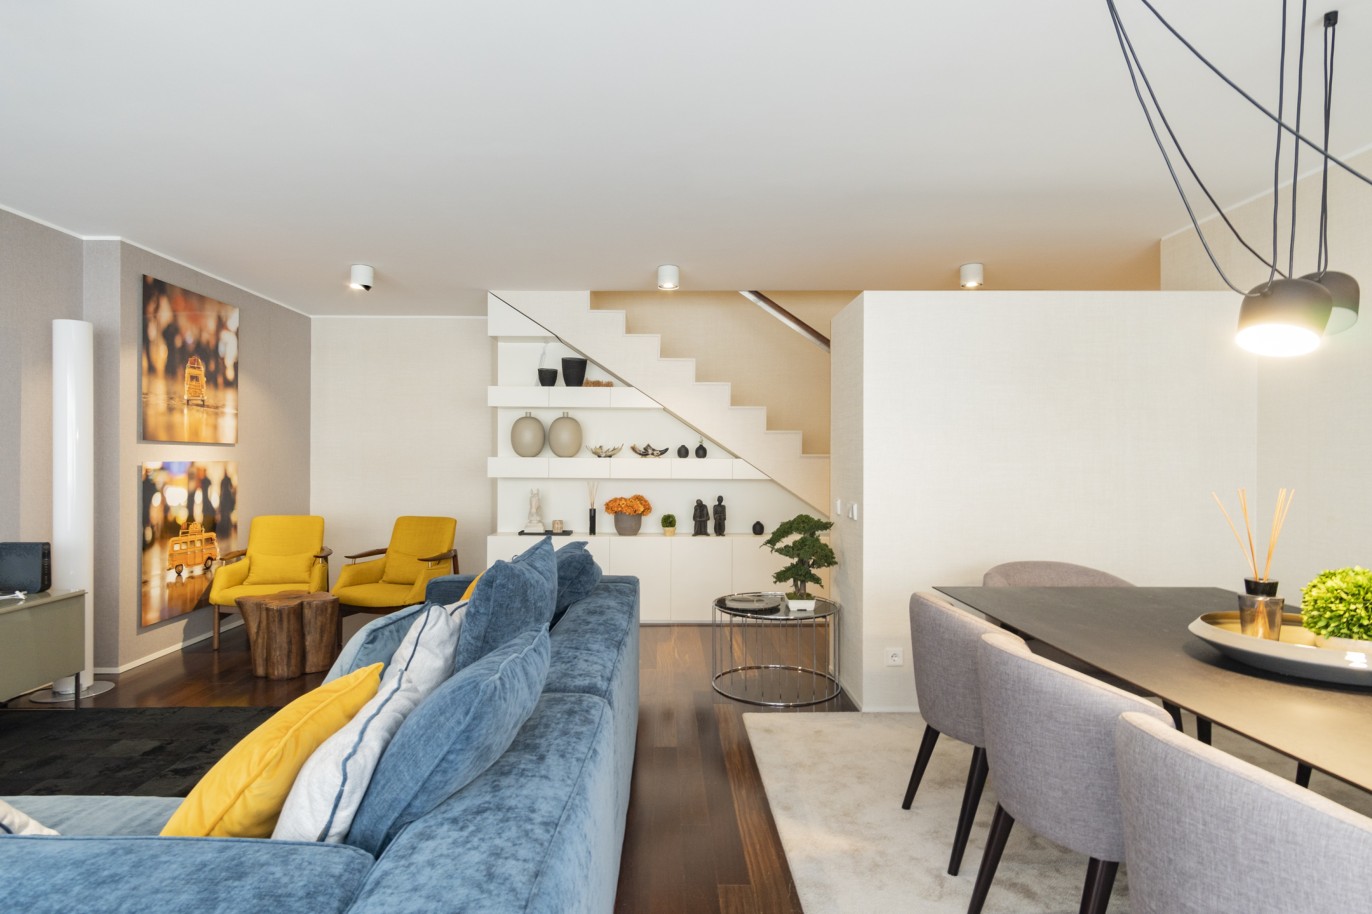 3 Bedroom Duplex Apartment with balcony, for sale, in Boavista, Porto, Portugal_217704